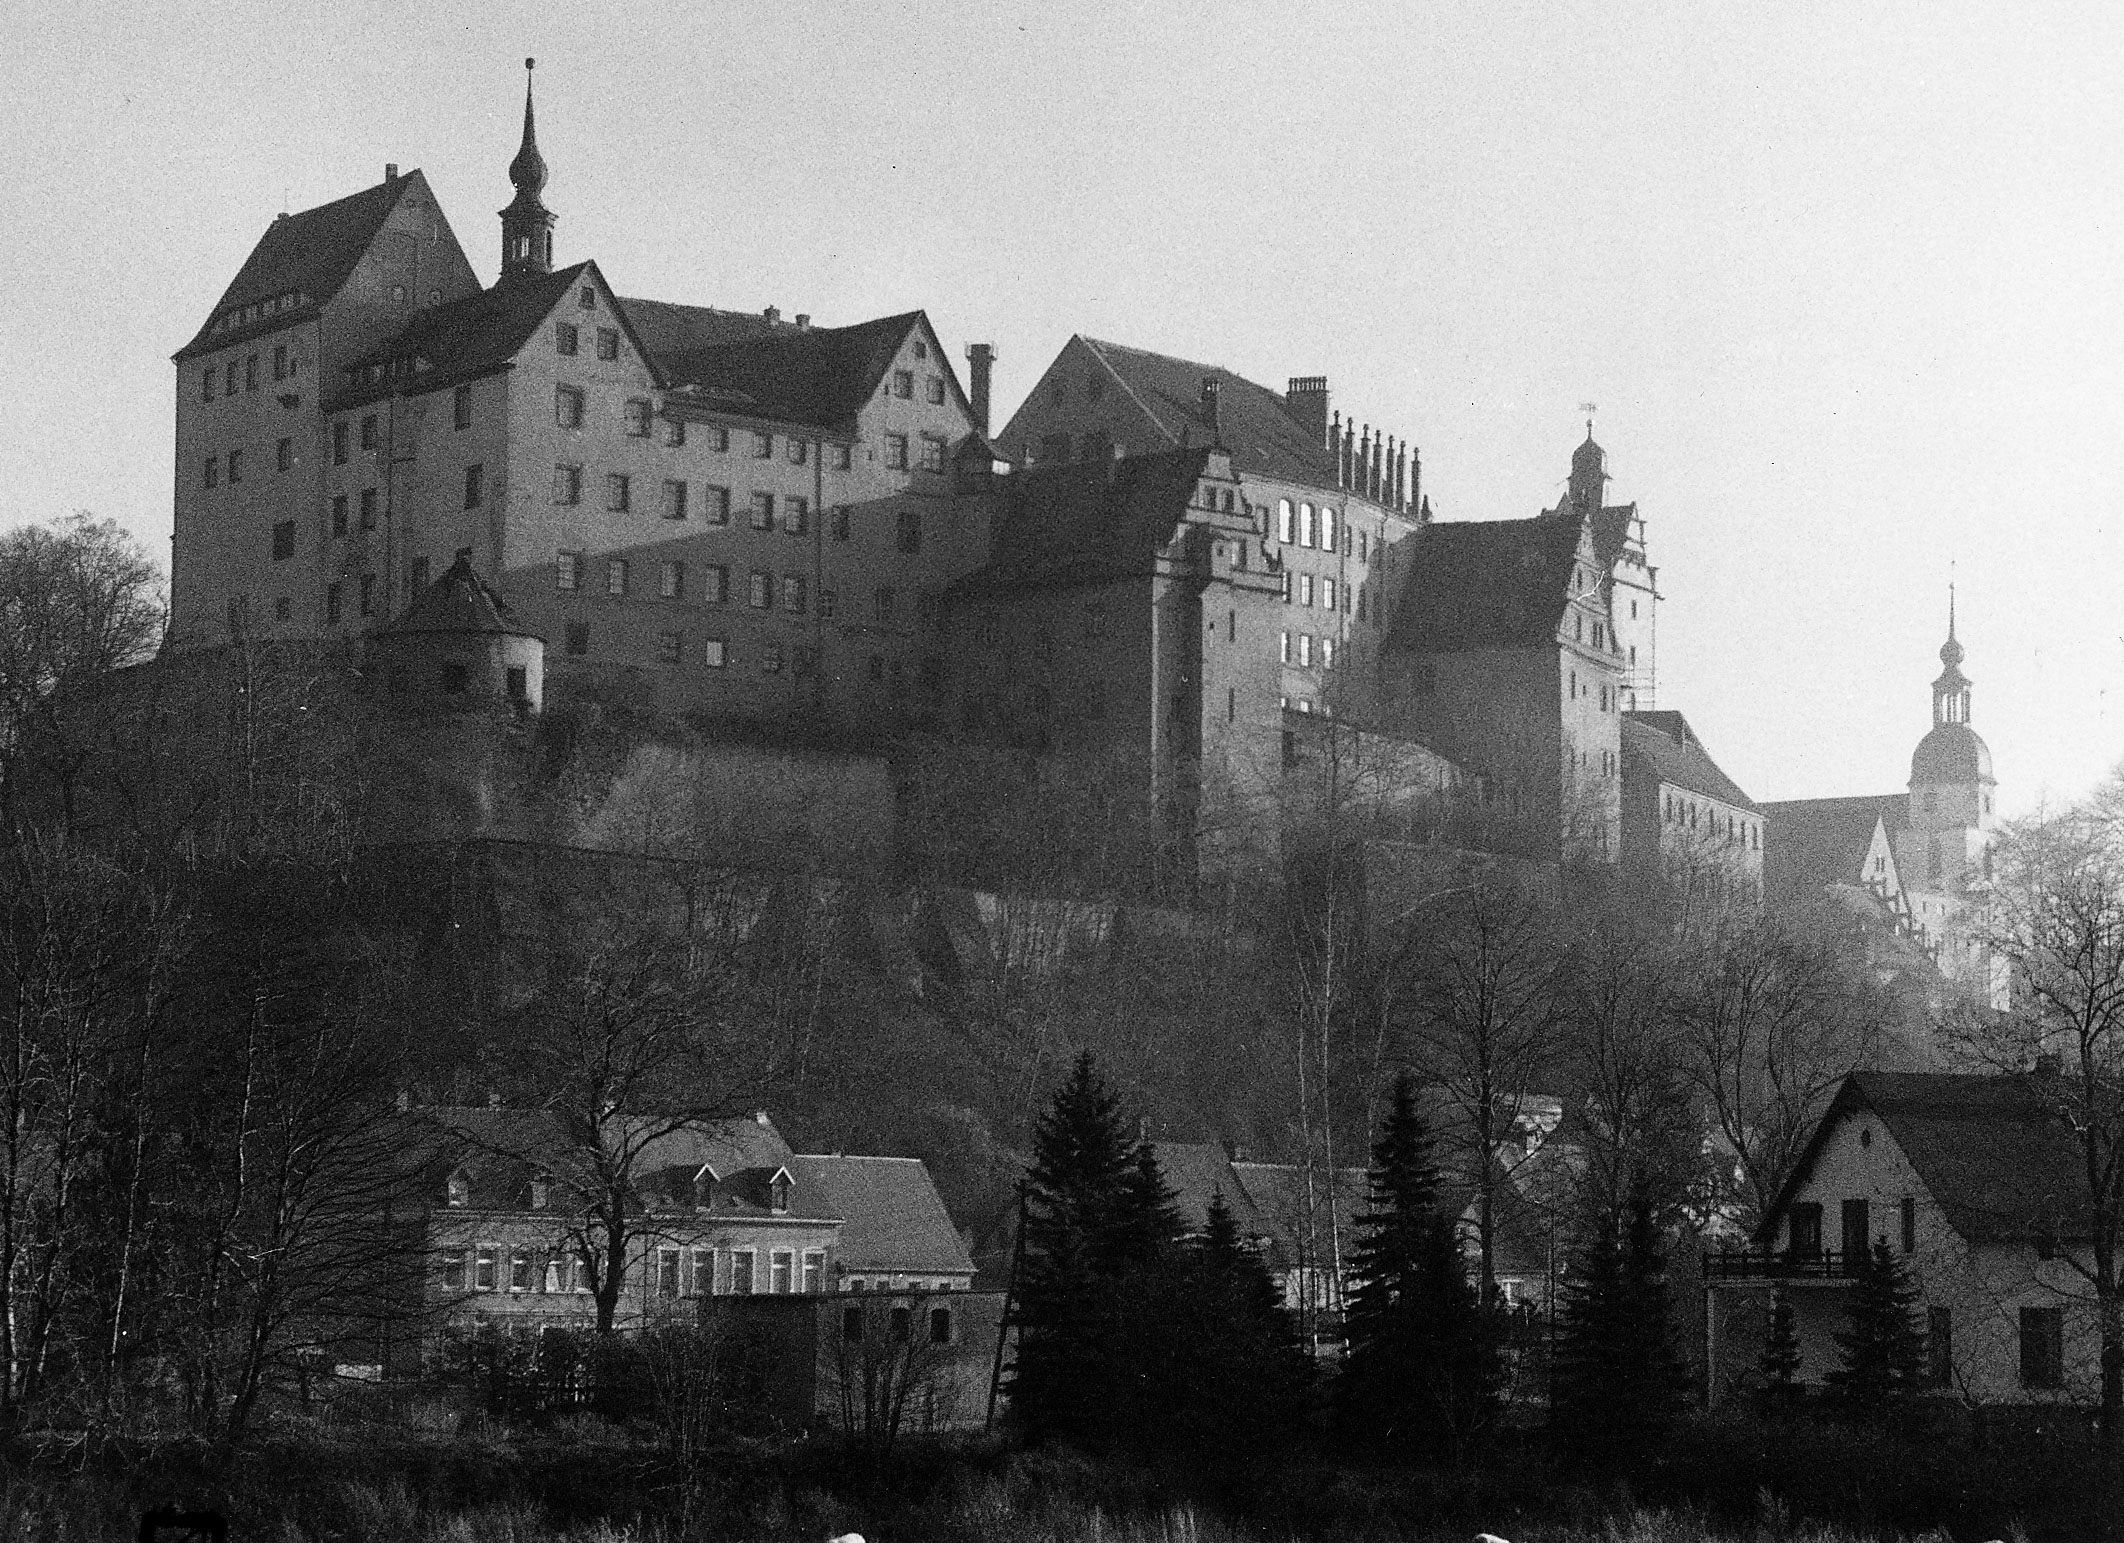 Nazis Built an Escape-Proof Castle. Allied POWs Got Out More Than 30 Times.